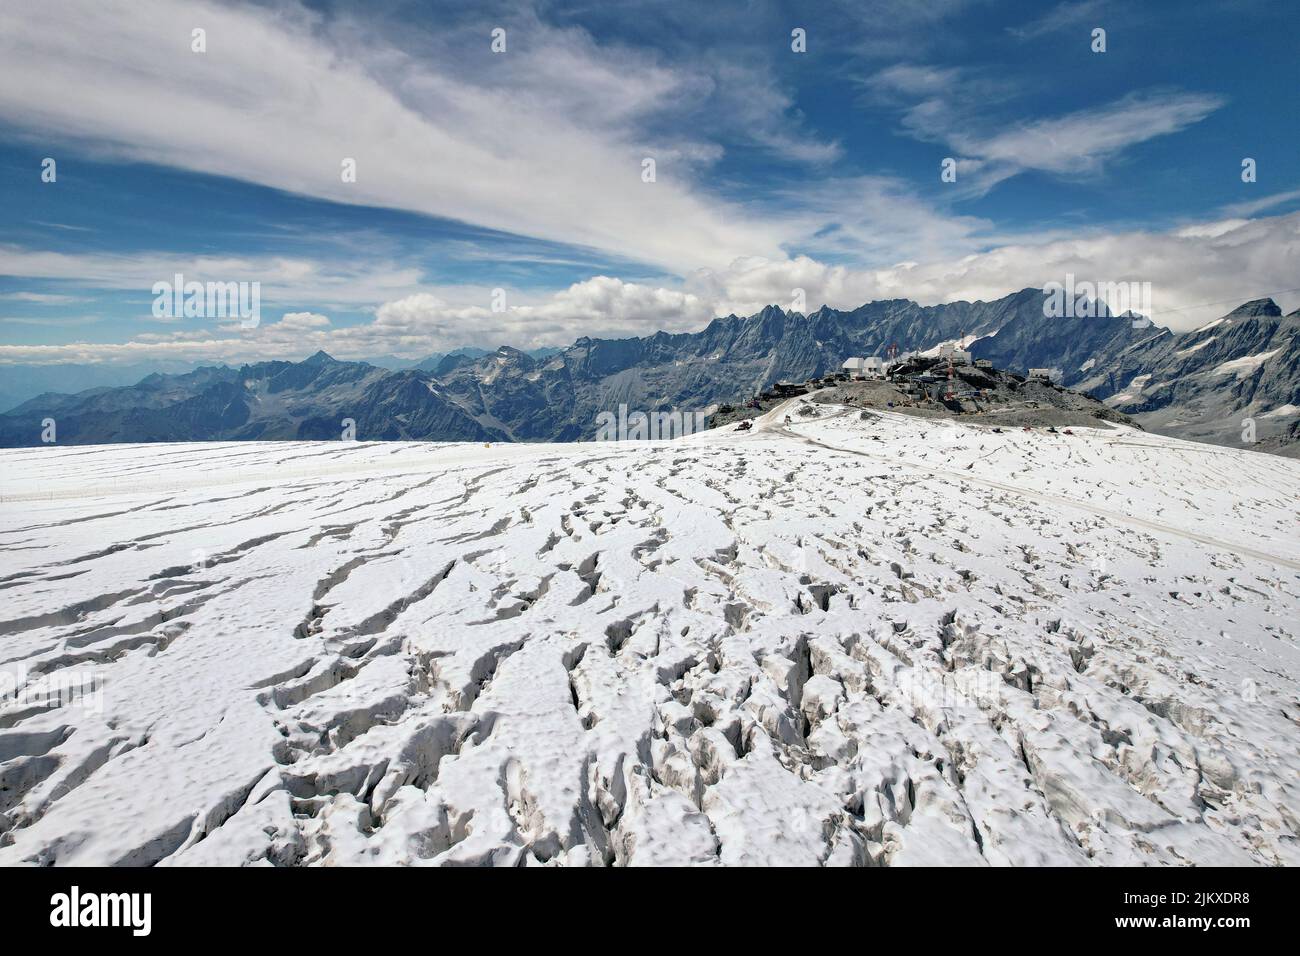 Meseta Rosà del glaciar, los efectos del cambio climático son evidentes. Debido a la poca nieve y a las altas temperaturas a la altitud, el esquí se detiene en verano. Breuil-Cerv Foto de stock